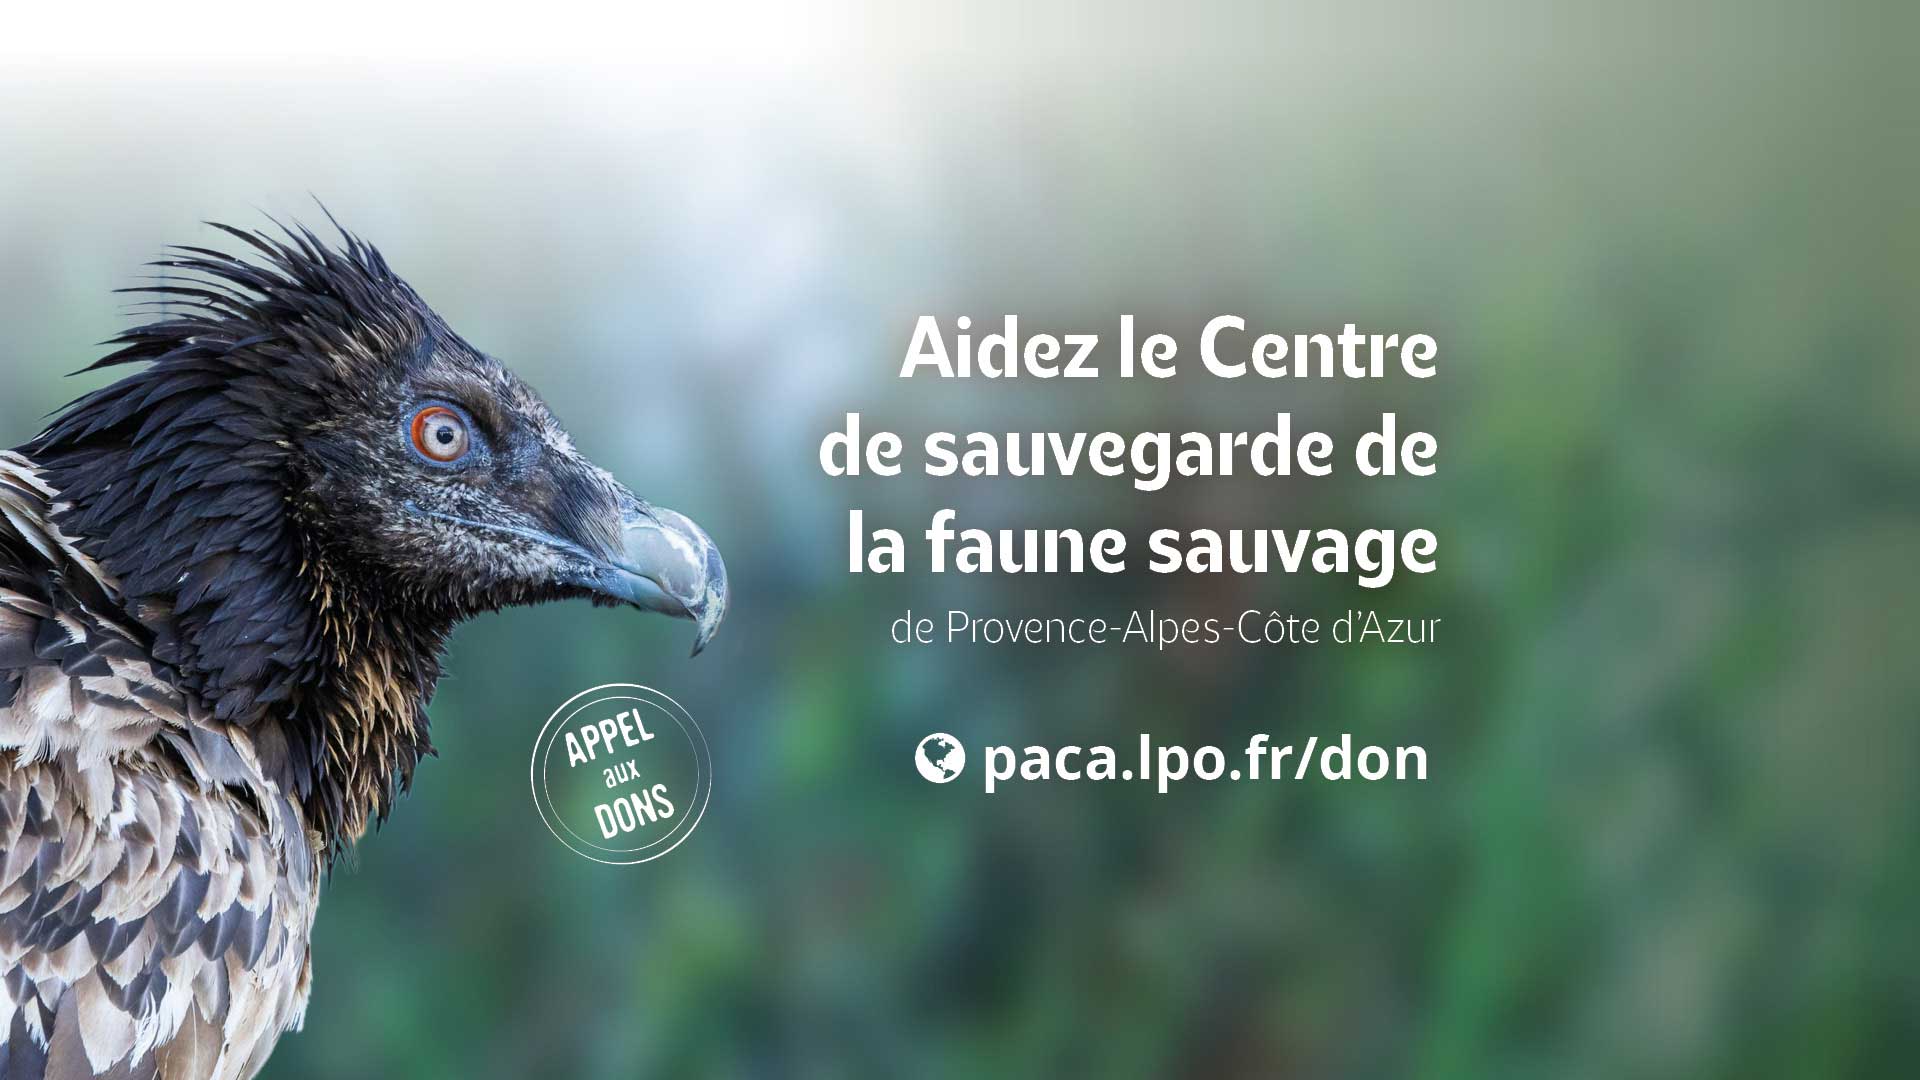 Appel aux dons : Aidez le Centre de sauvegarde de la faune sauvage de Provence-Alpes-Côte d'Azur